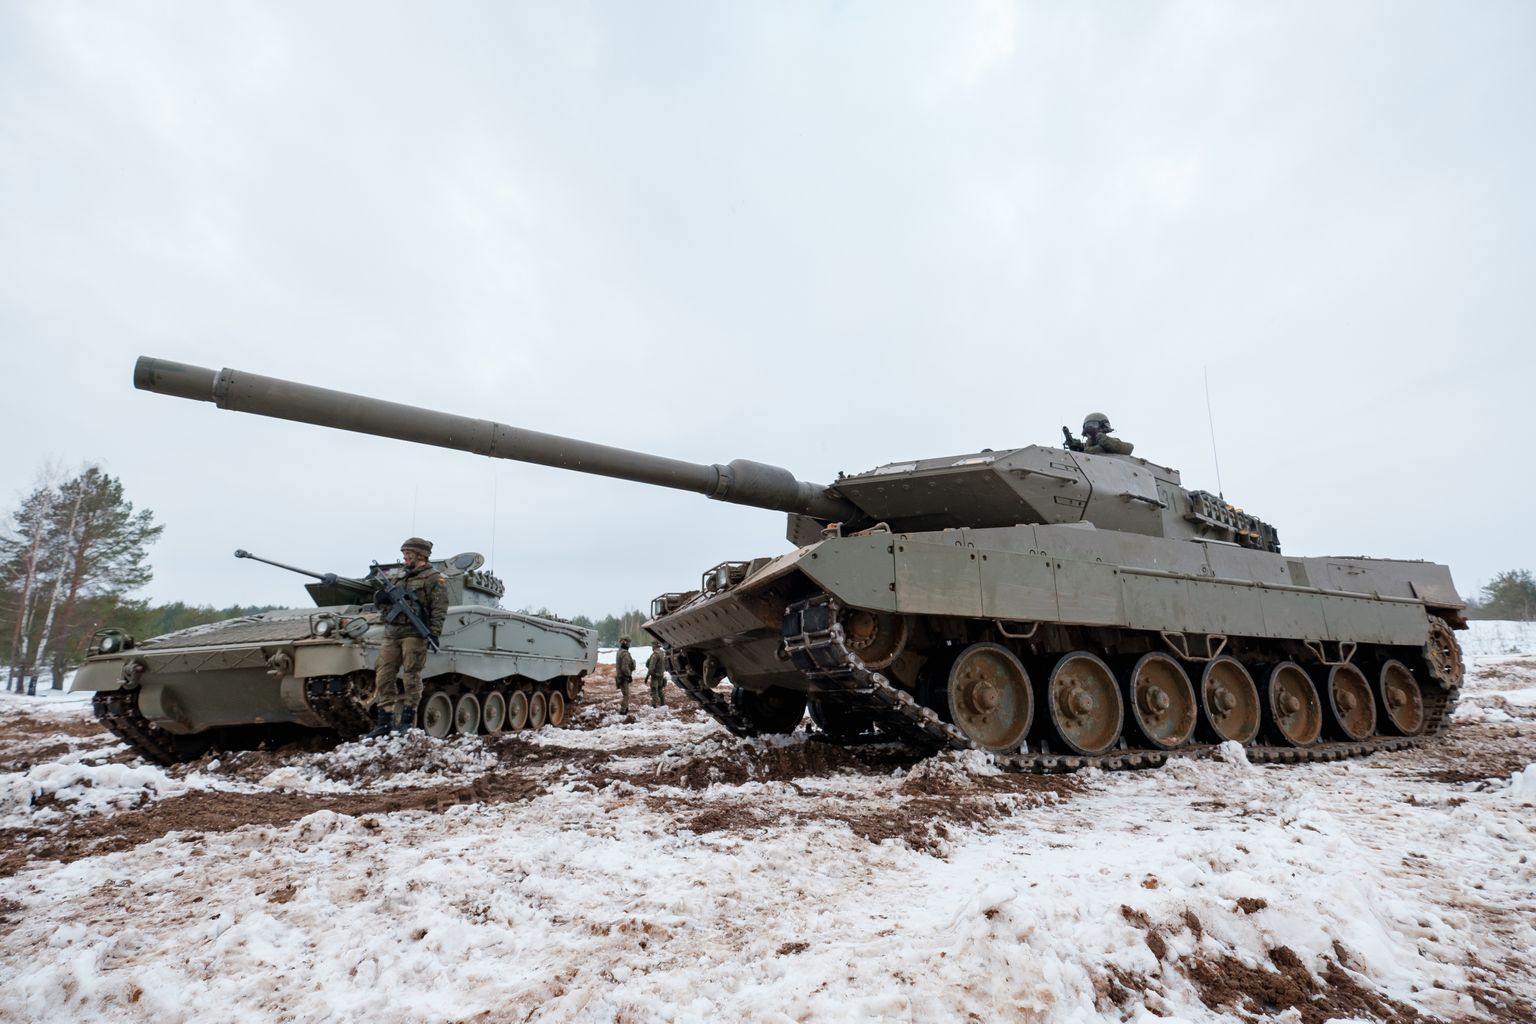 "Leopard 2 tanki".